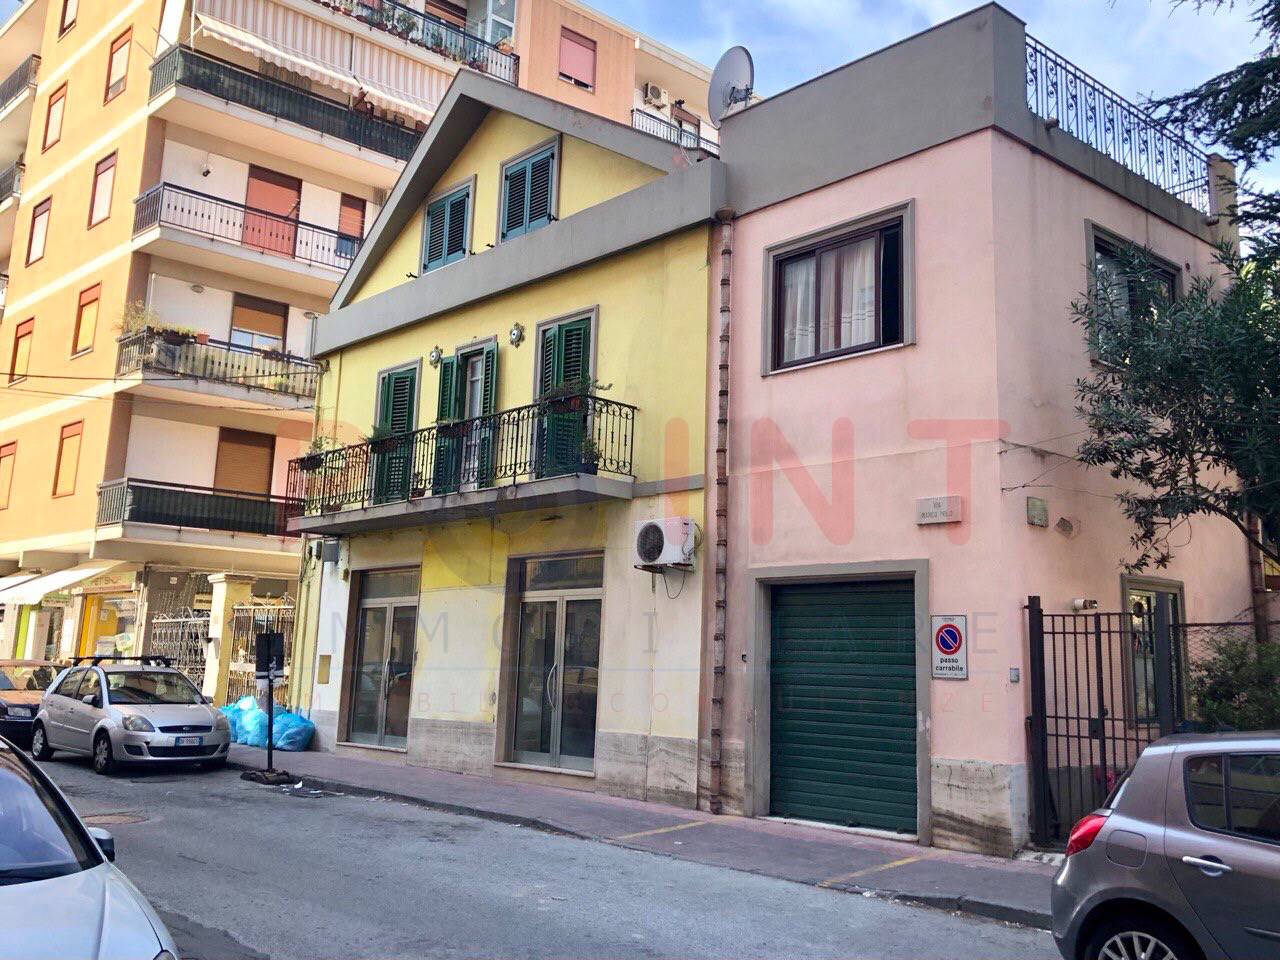 Attività / Licenza in affitto a Messina, 4 locali, zona Località: CONTESSE/GAZZI, prezzo € 650 | PortaleAgenzieImmobiliari.it